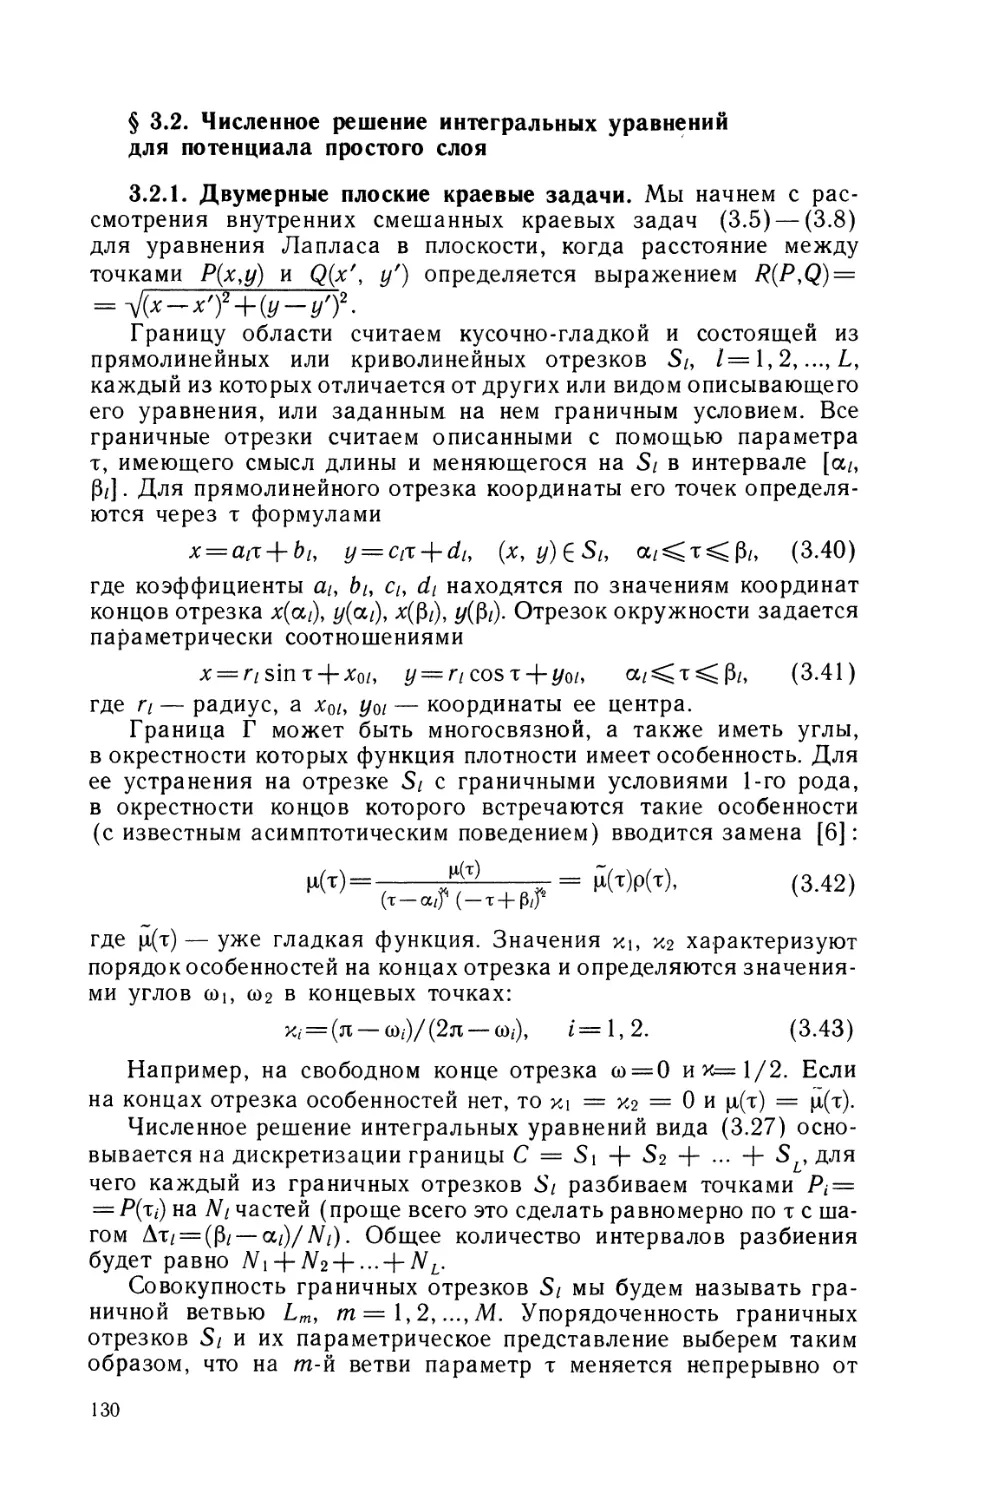 § 3.2. Численное решение интегральных уравнений для потенциала простого слоя.